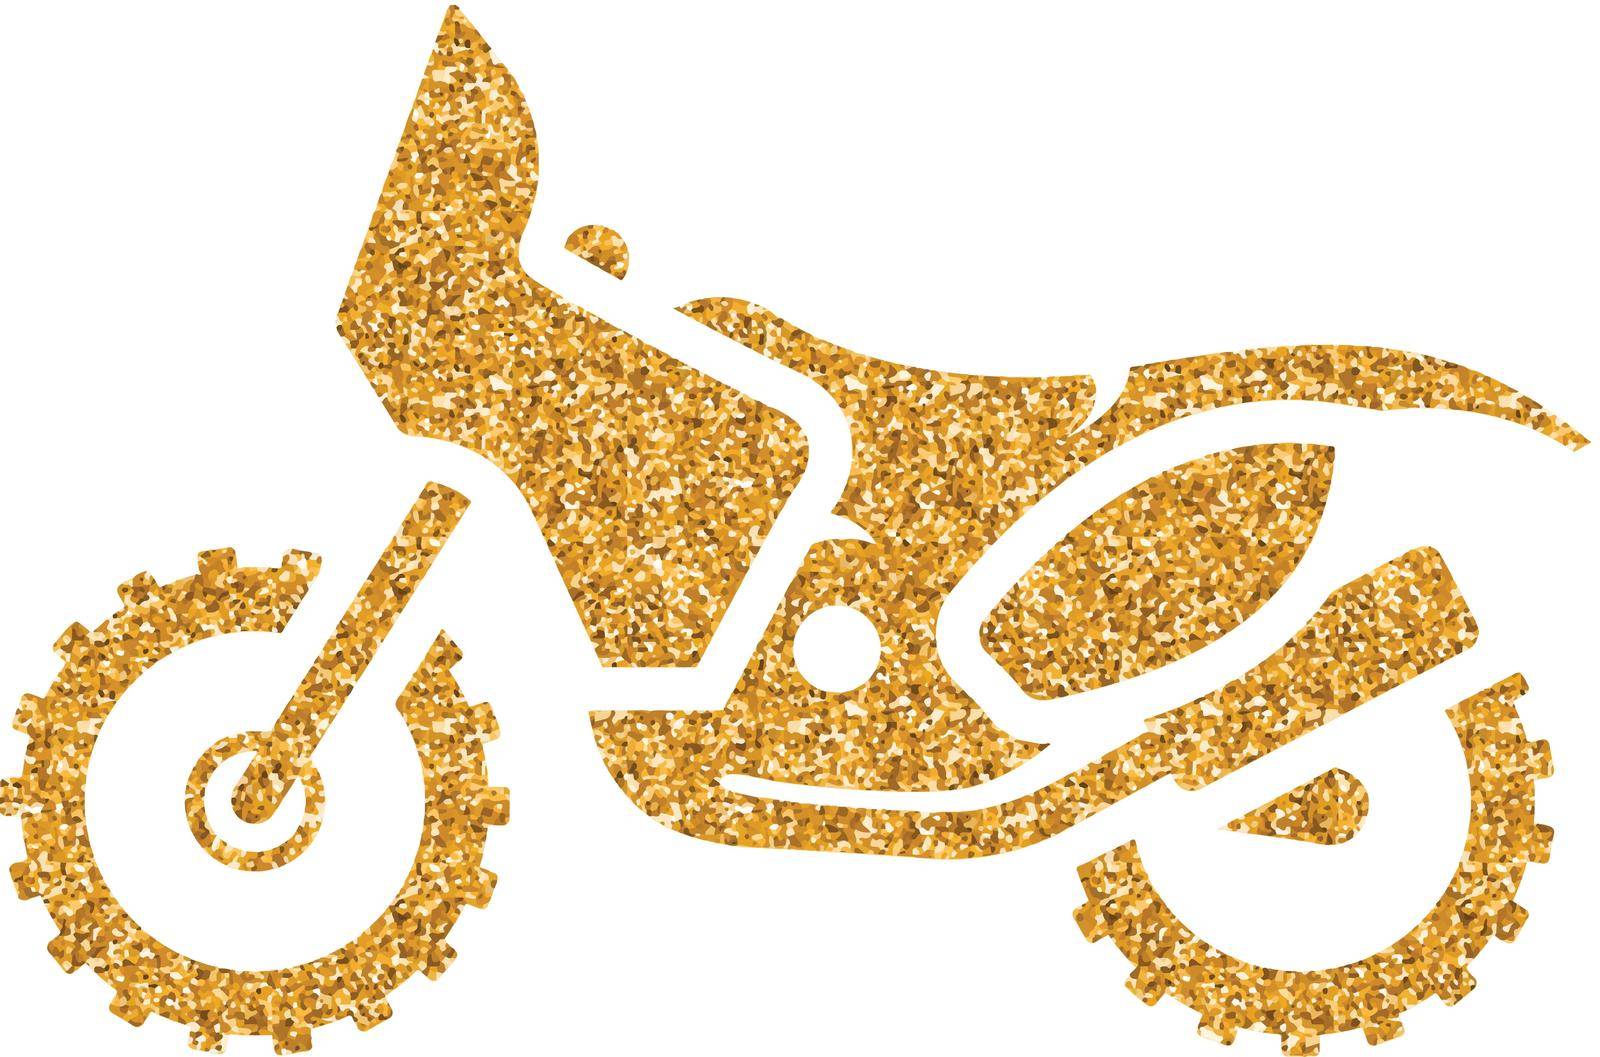 Motocross icon in gold glitter texture. Sparkle luxury style vector illustration.